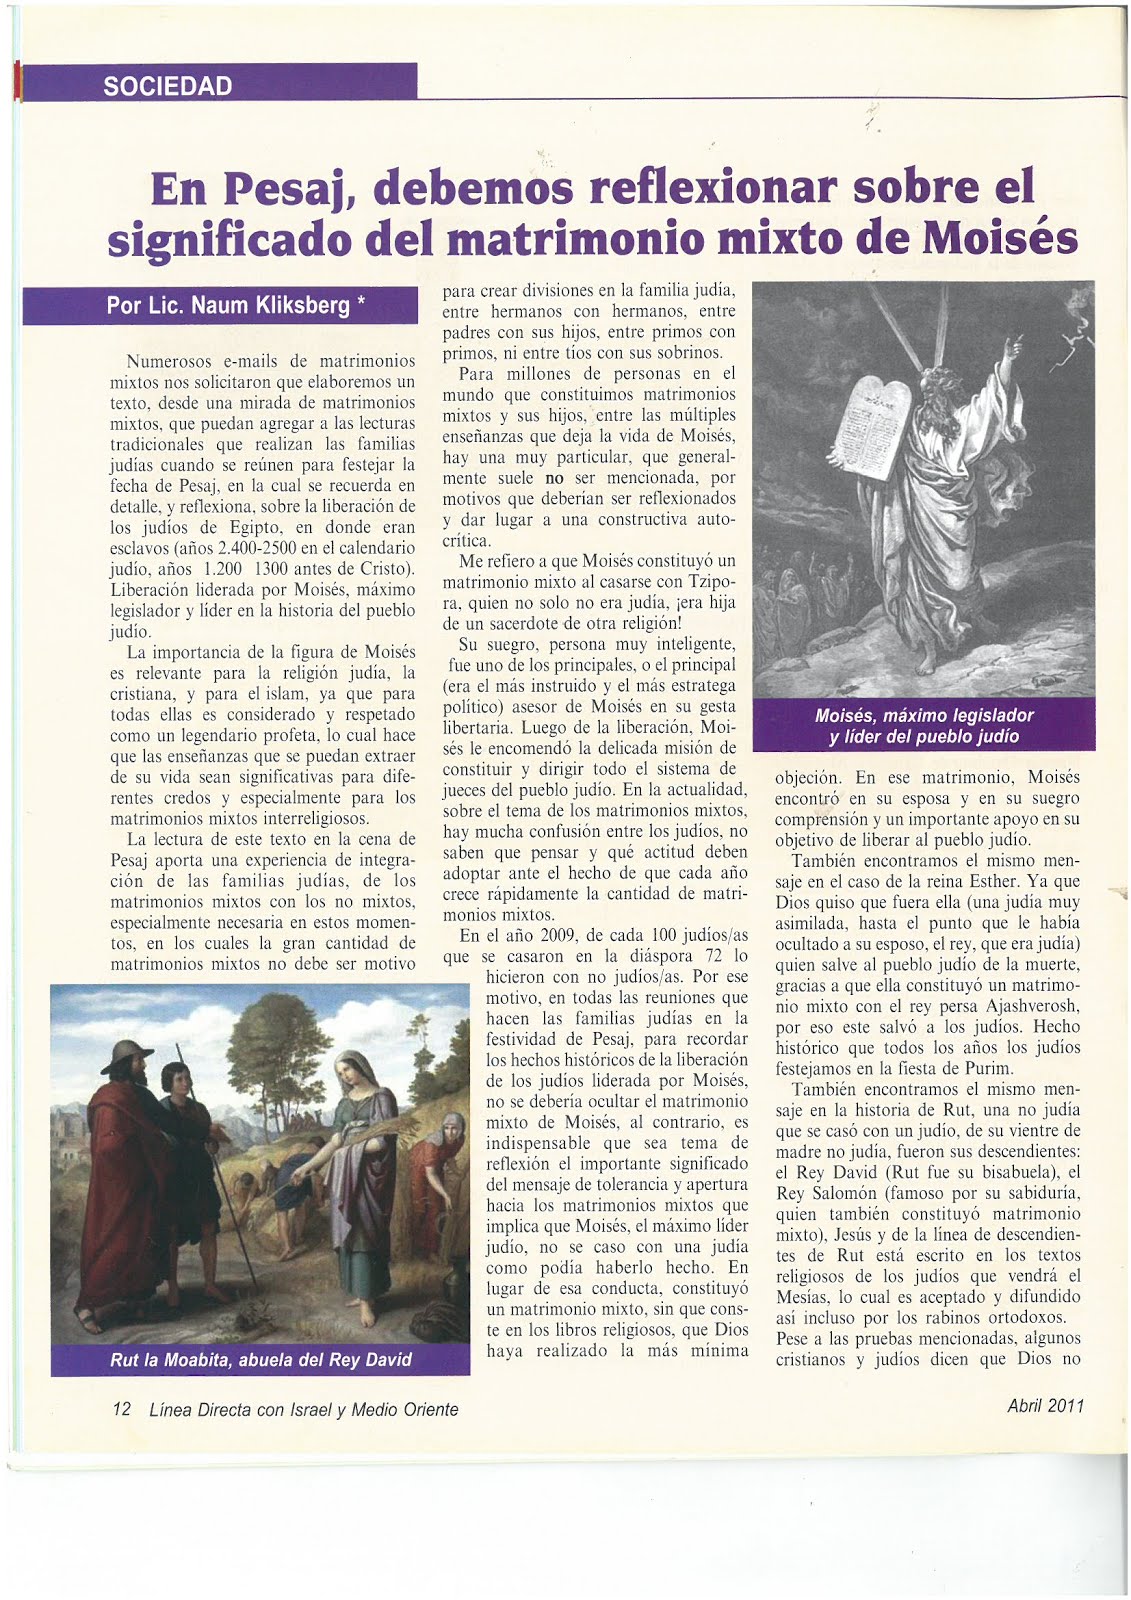 49 - Revista Israelí Linea Directa con Israel y Medio Oriente.04/2011. Artículo de Naum Kliksberg